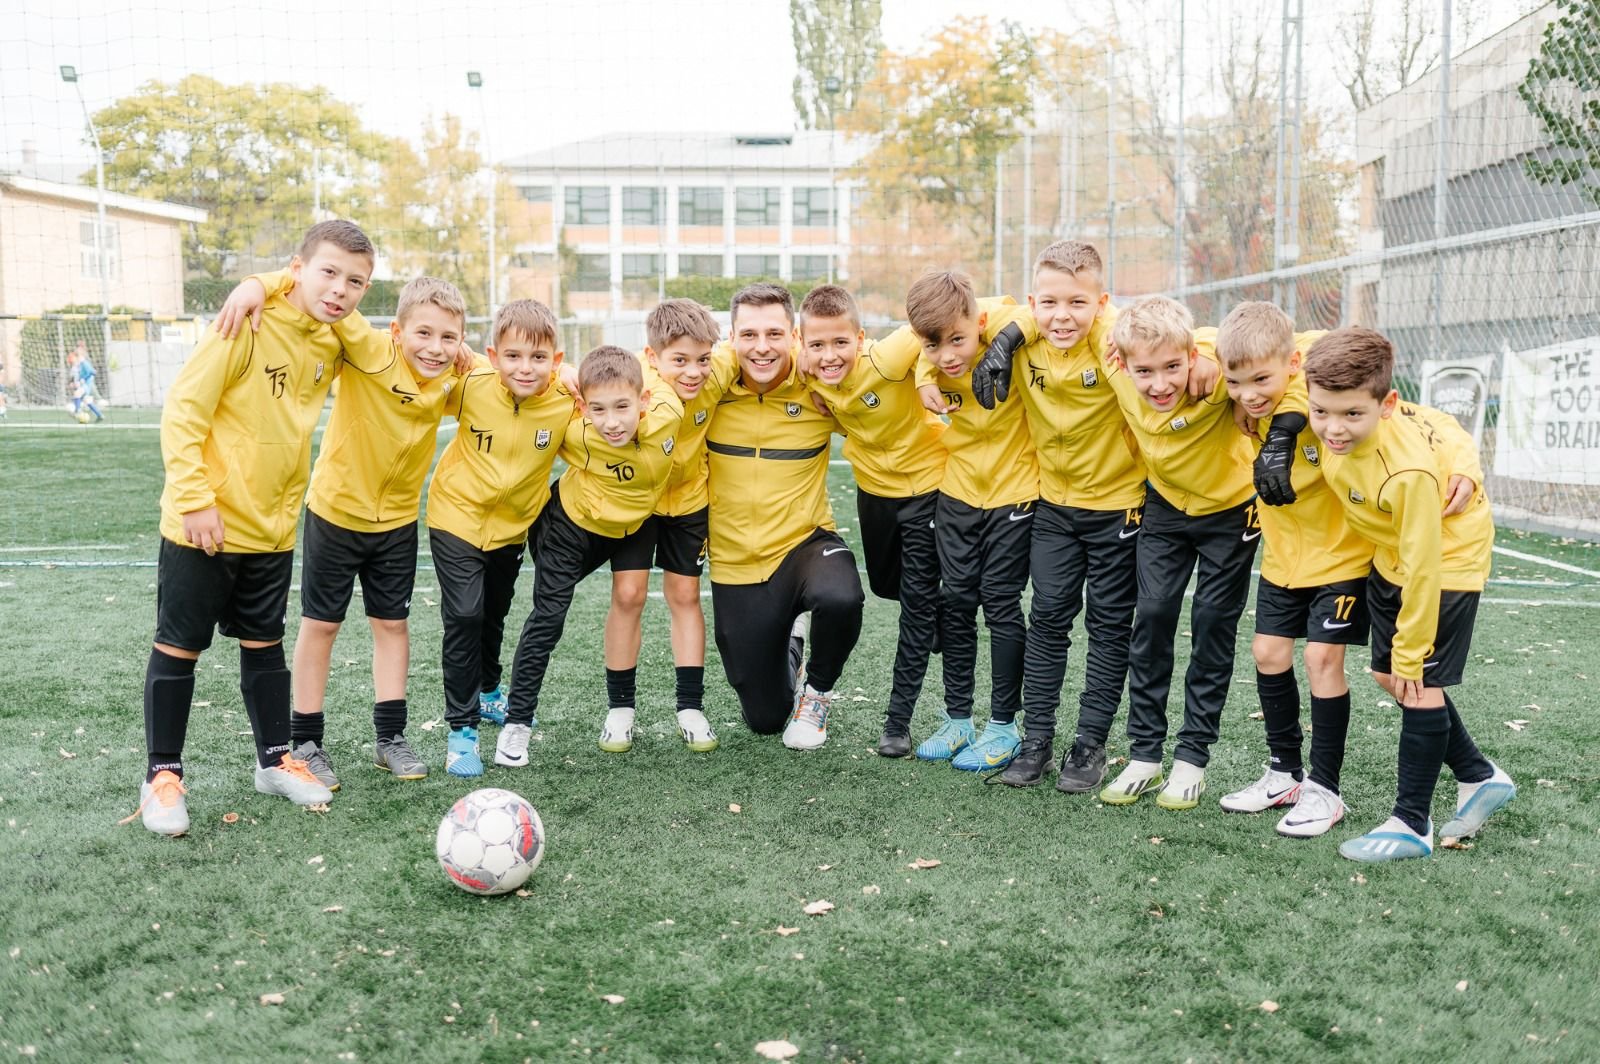  O academie ieșeană de fotbal, alături de granzii Europei